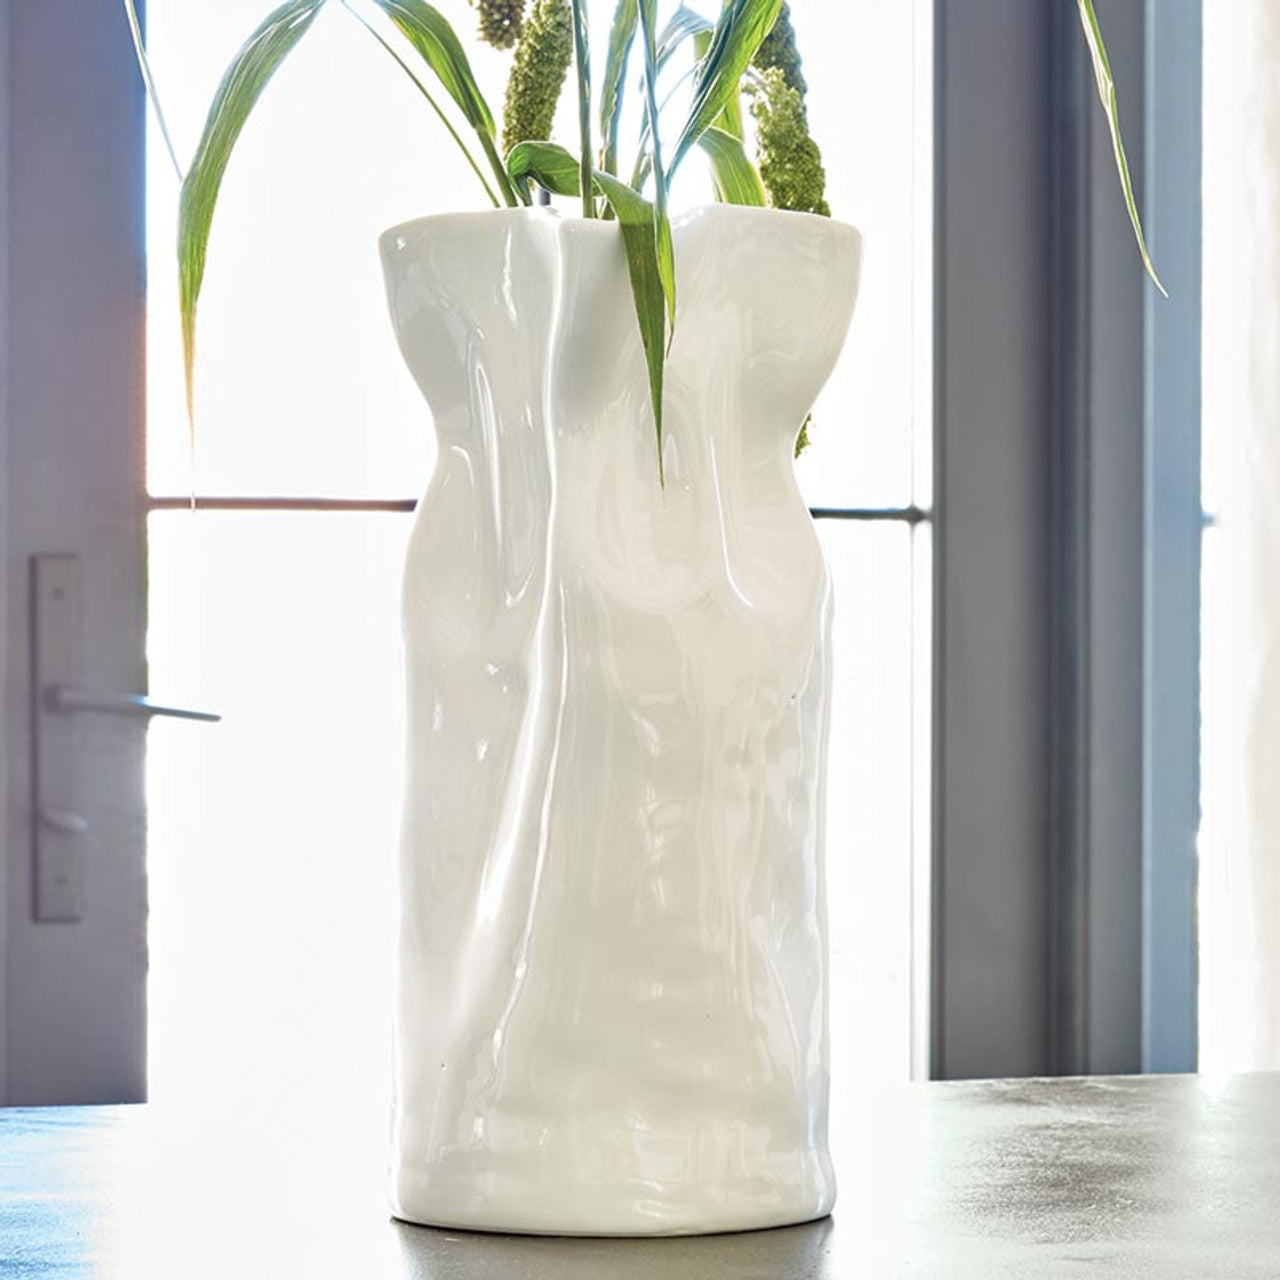 View Santa Barbara - Cinched Ceramic Vase, White - Mini